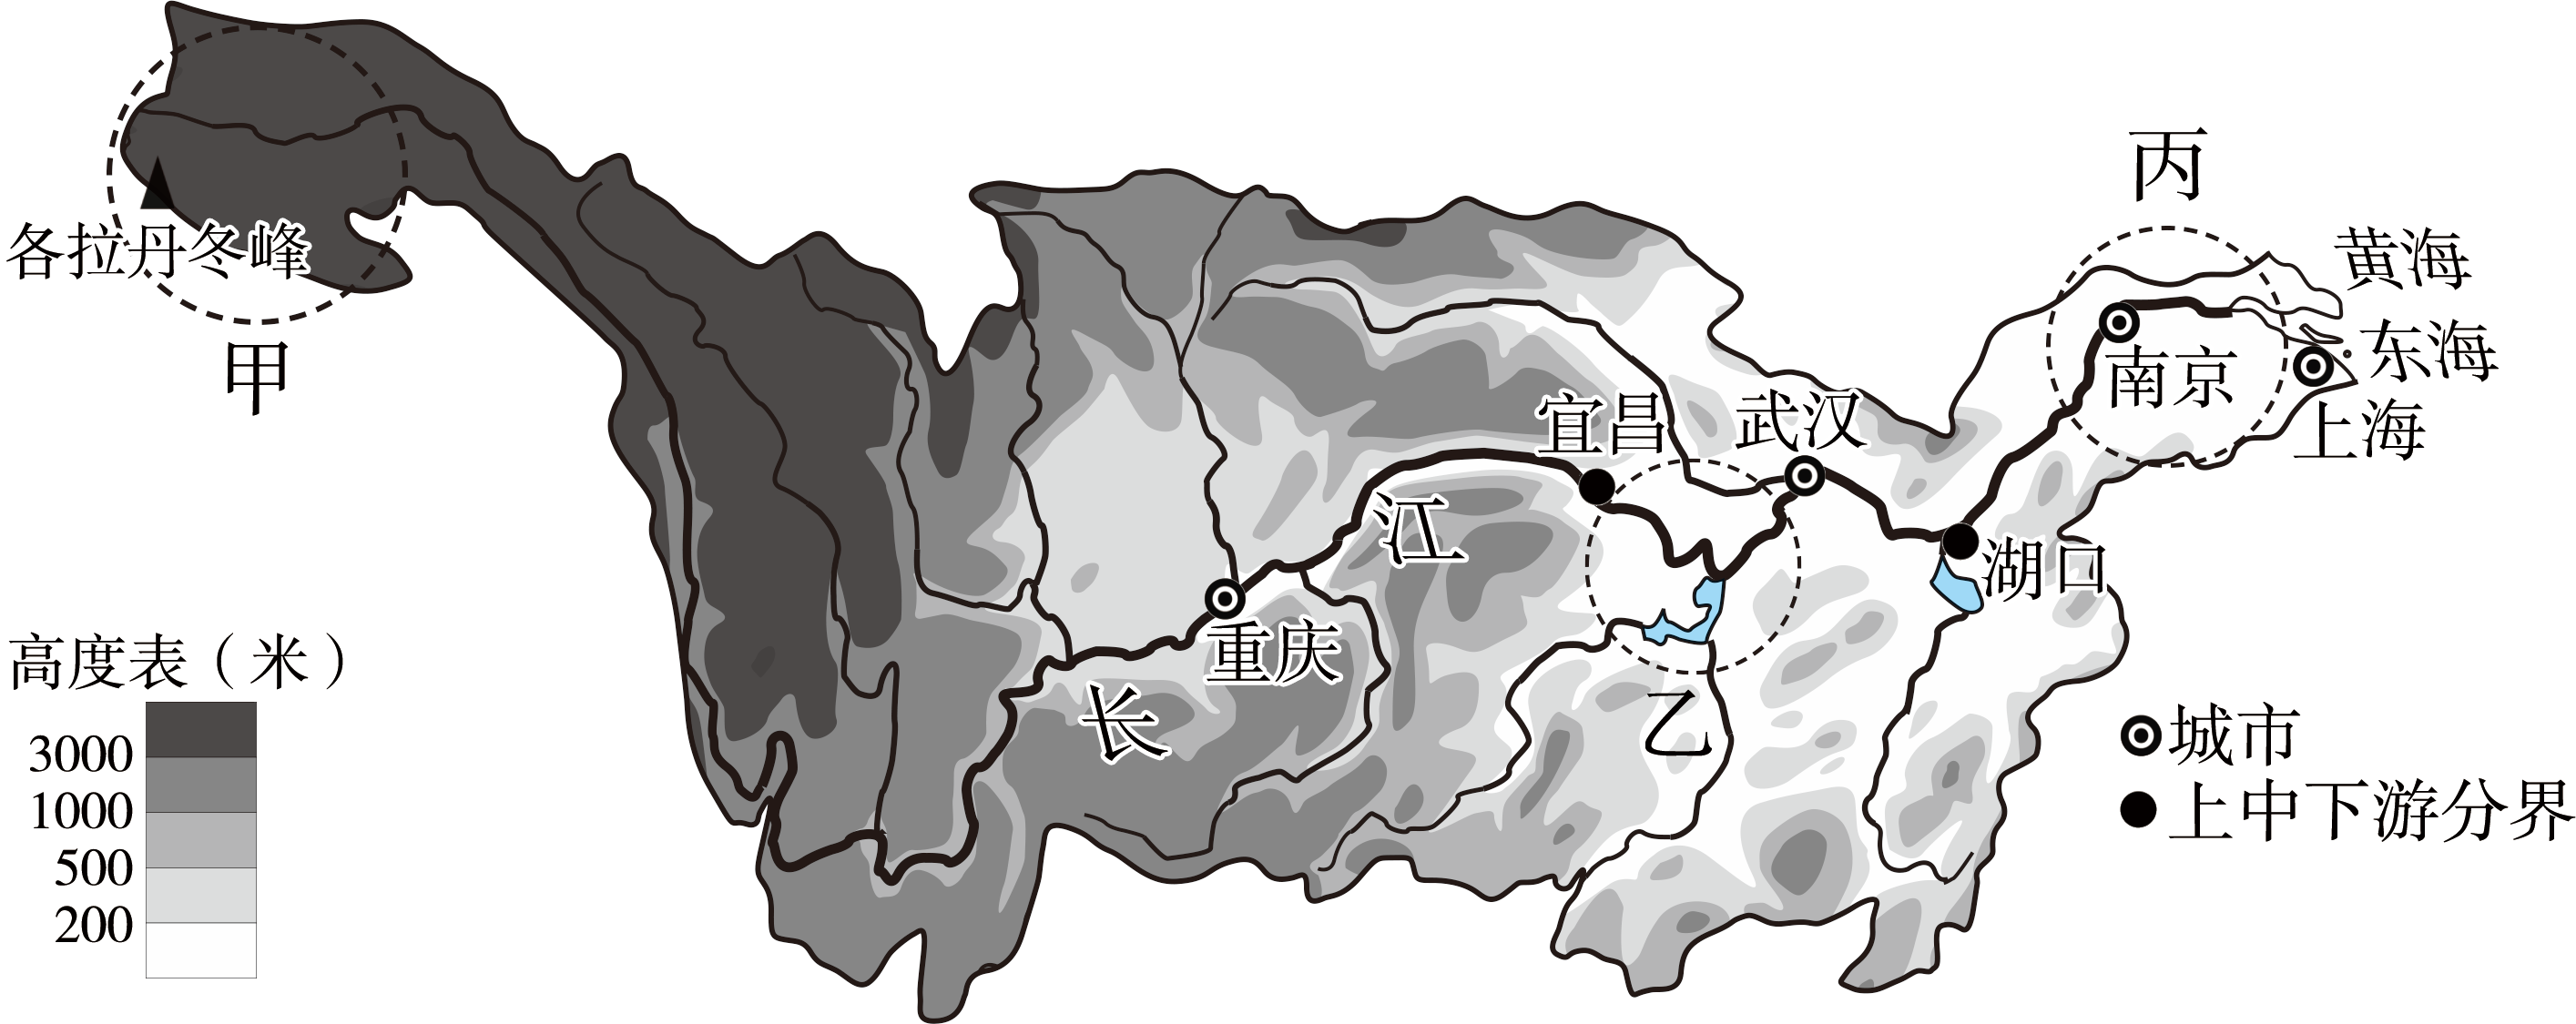 第一学期-2022年1月期末修图-长江水系图-长江流域甲乙丙